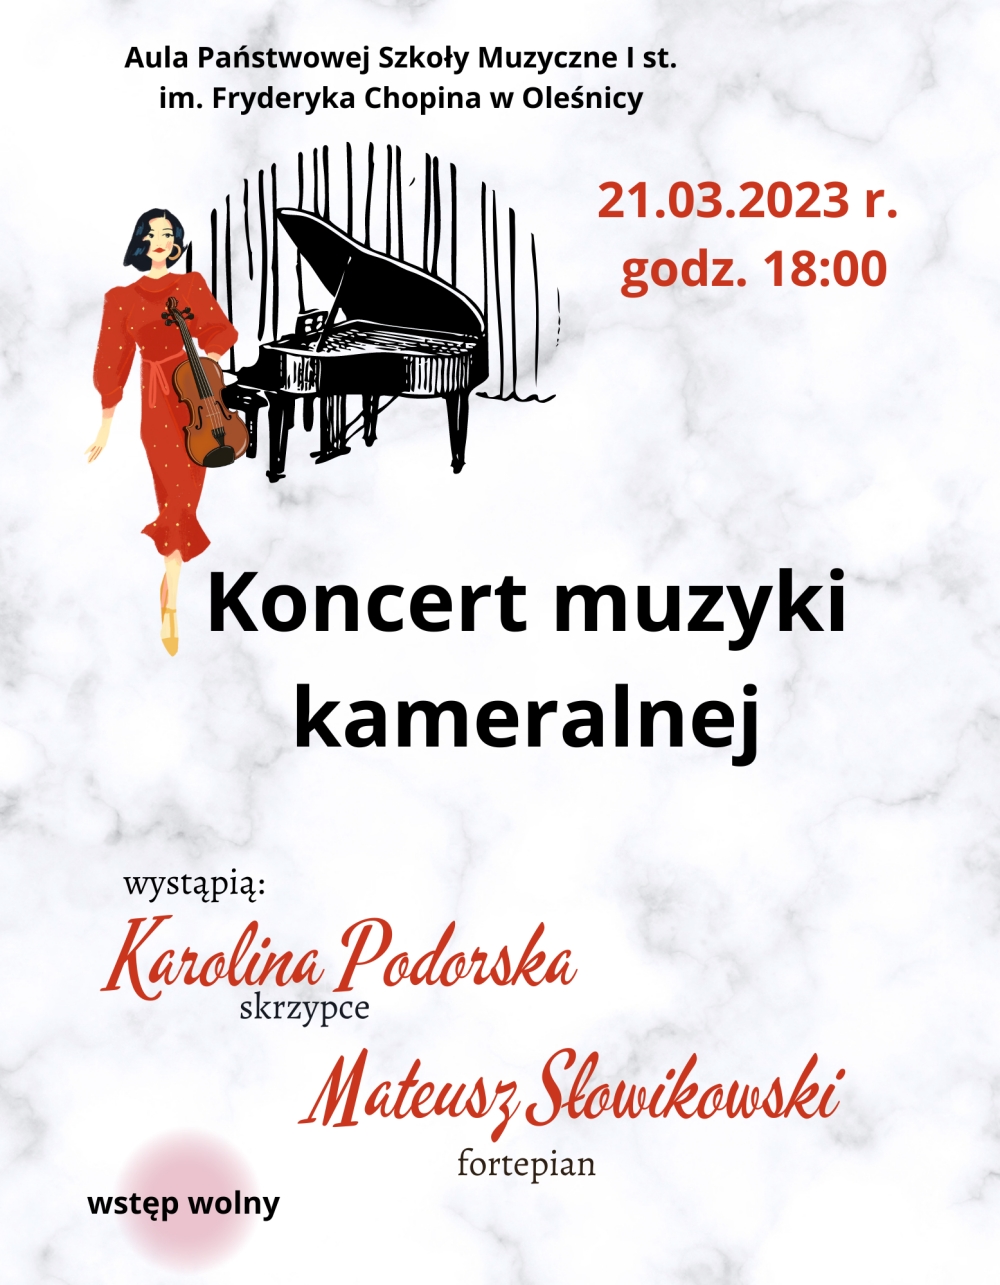 Plakat promujący koncert muzyki kameralnej w Państwowej Szkole Muzycznej w Oleśnicy